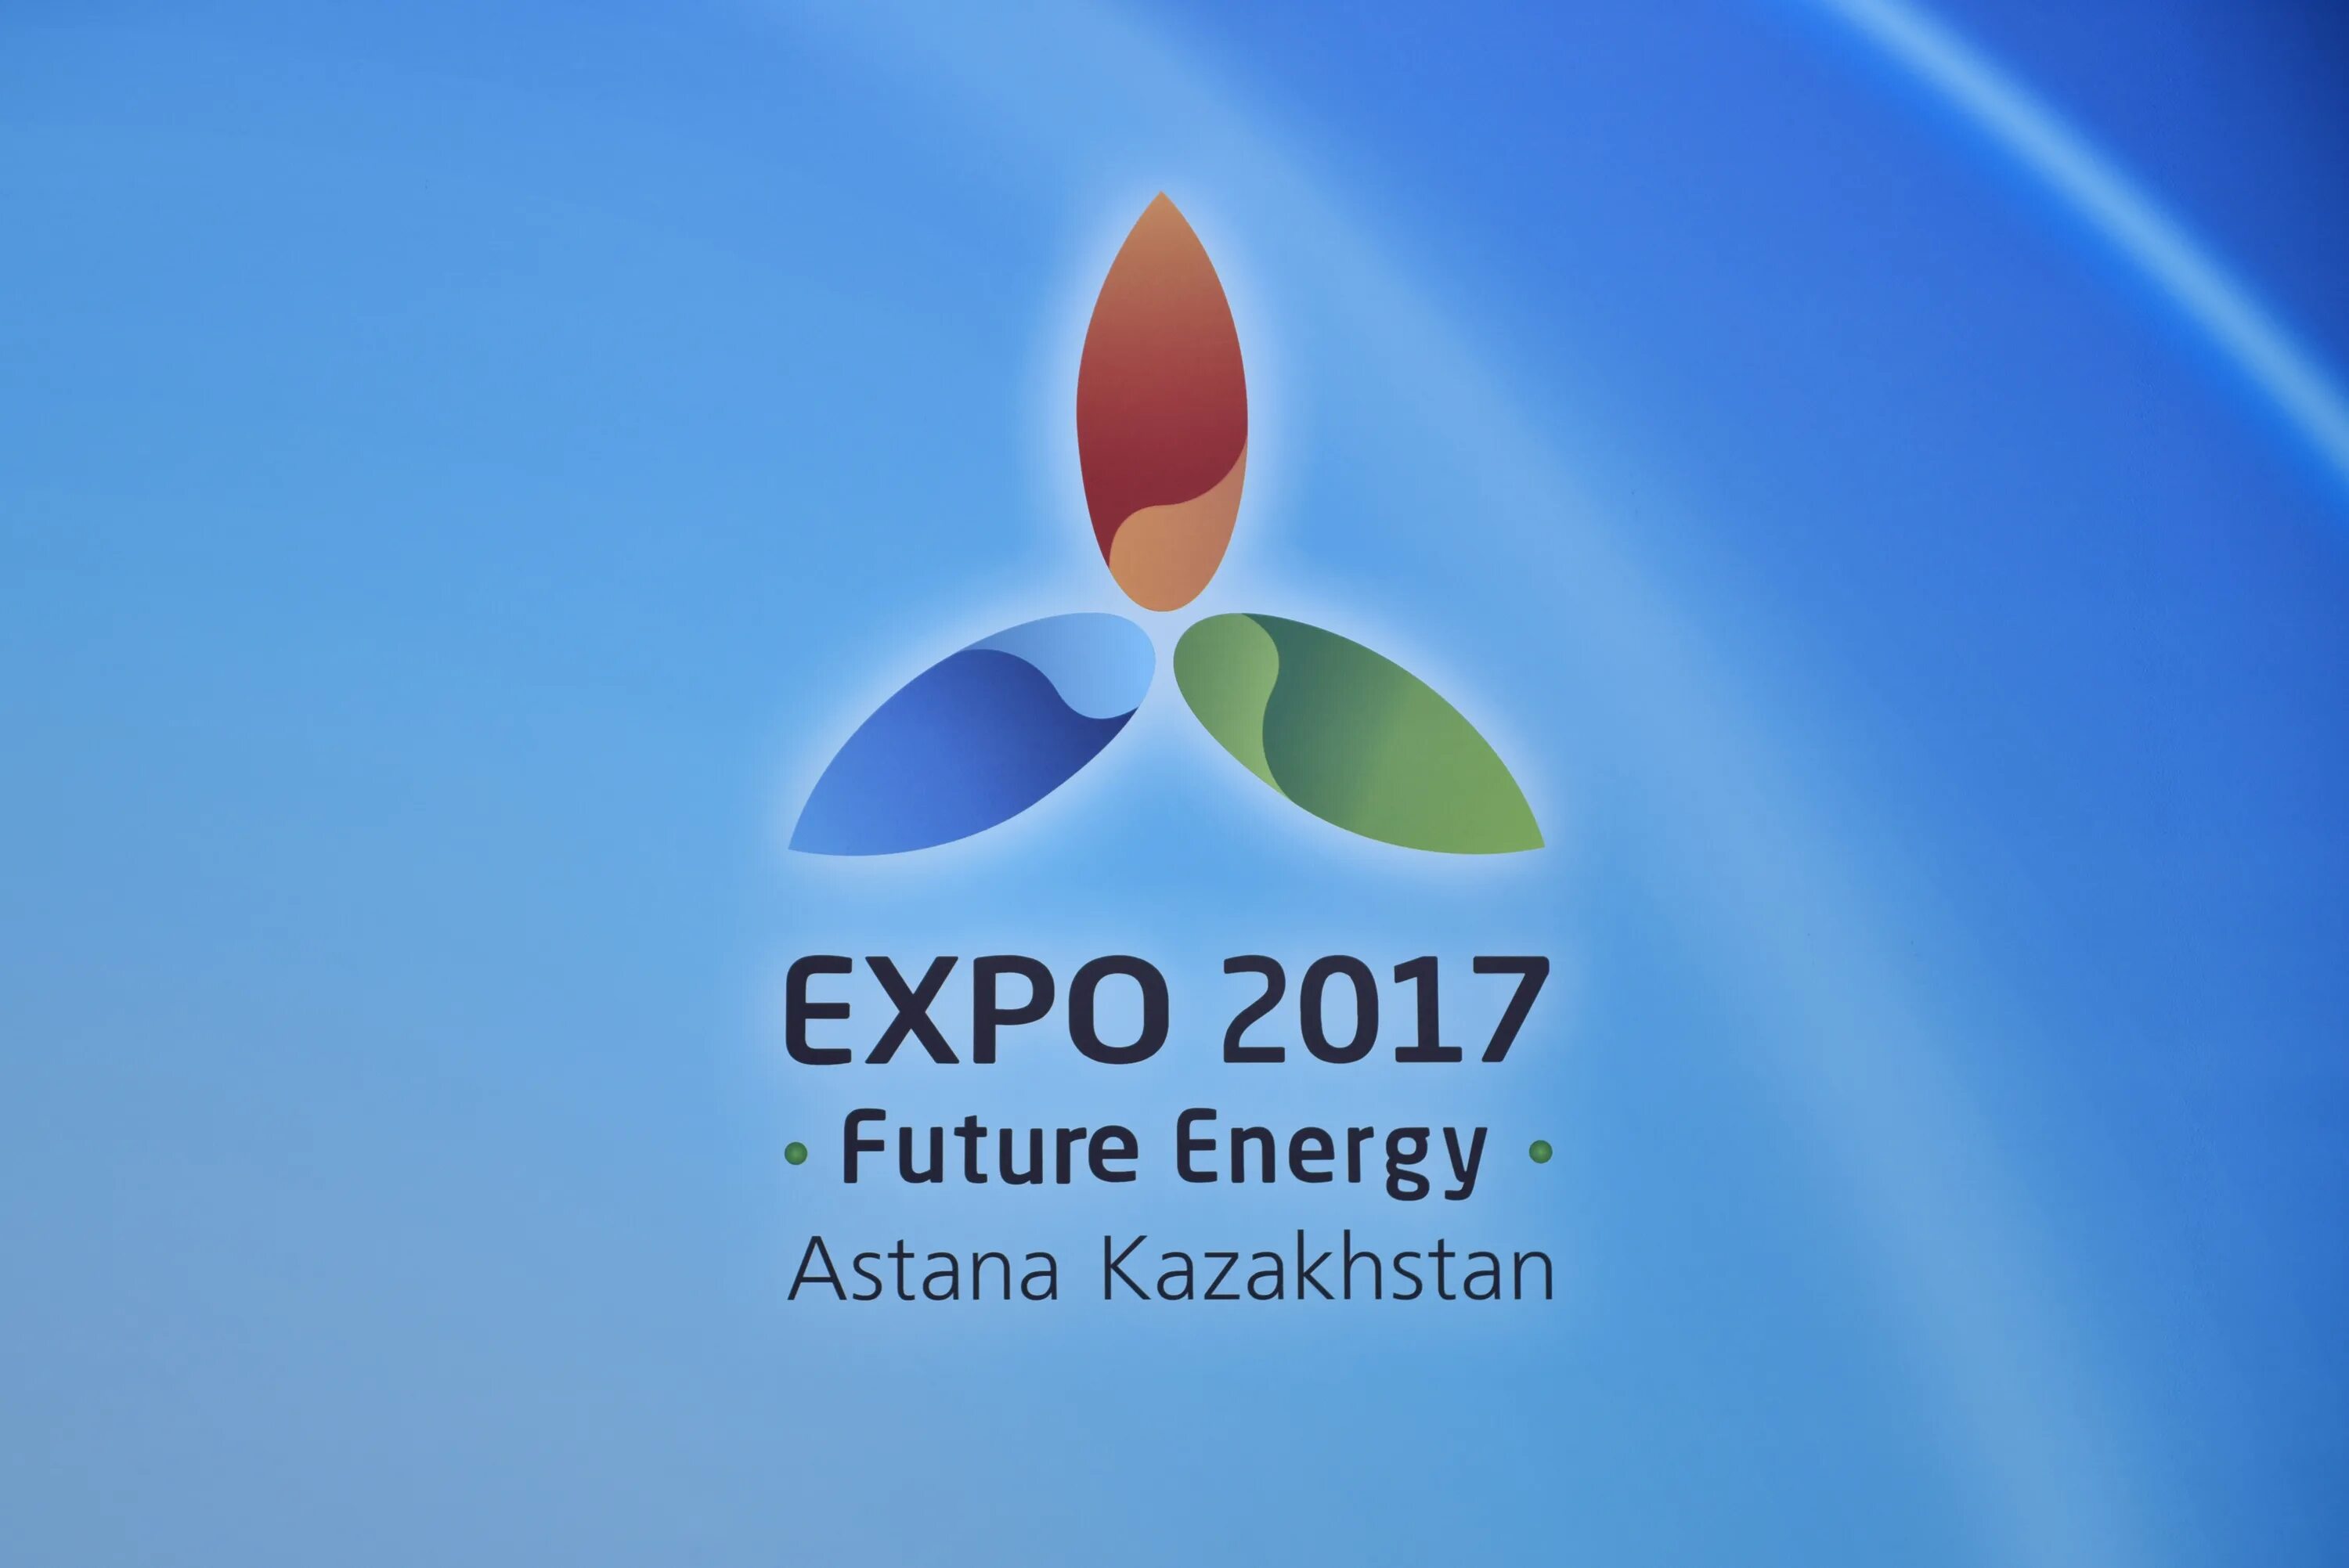 Expo 2017 логотип. Экспо 2017 Казахстан эмблема. Казахстан Экспо 2017 Астана. Экспо 2017 энергия будущего. Экспо 17